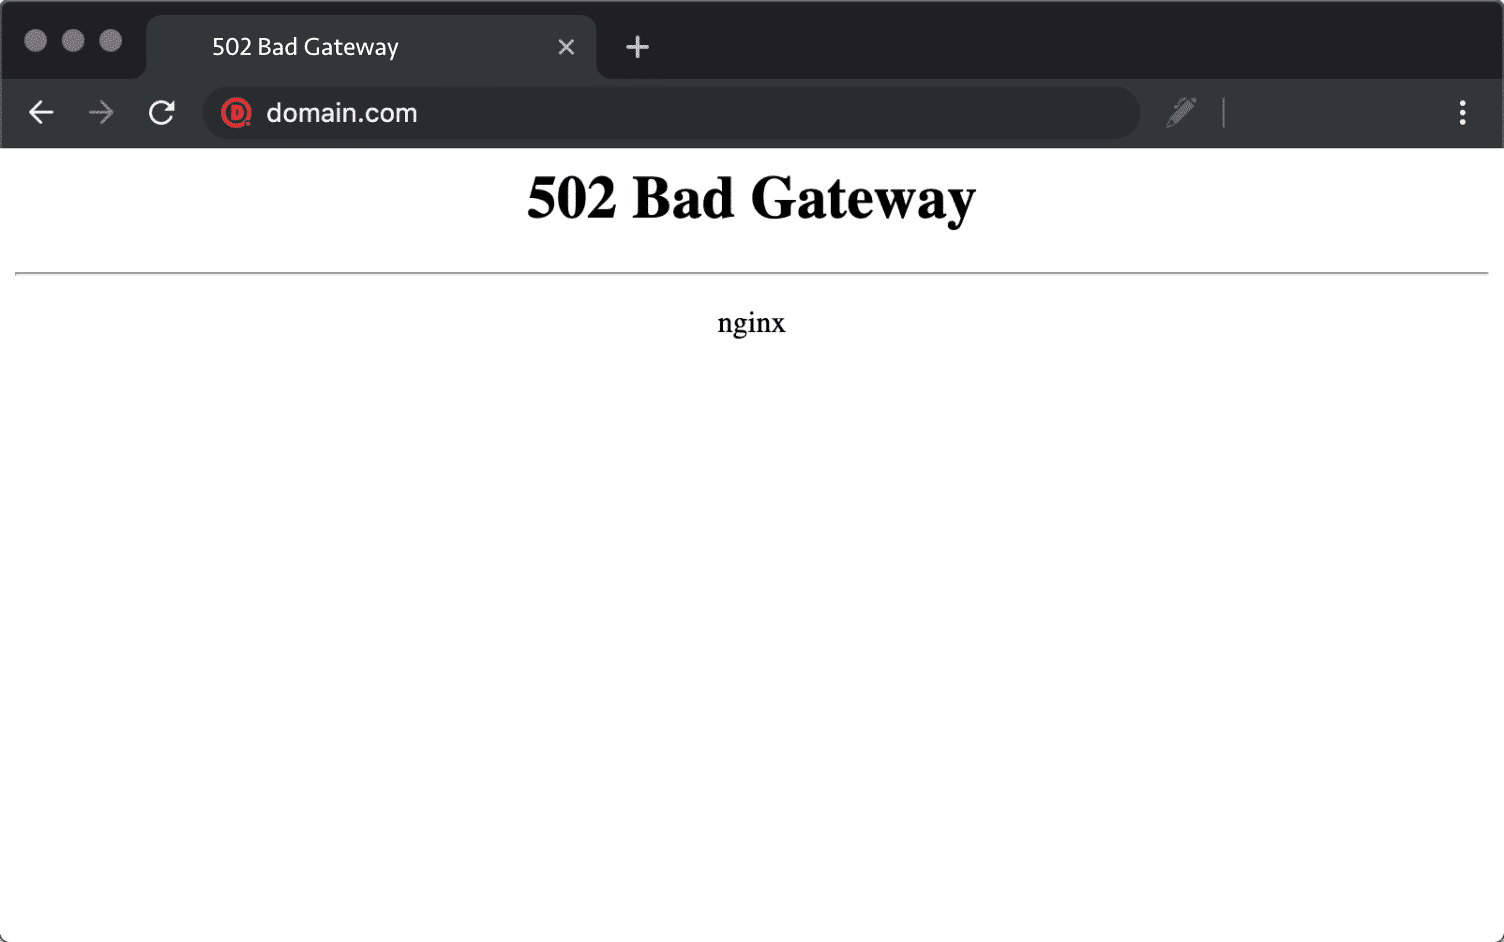 A 502 (Bad Gateway) error.